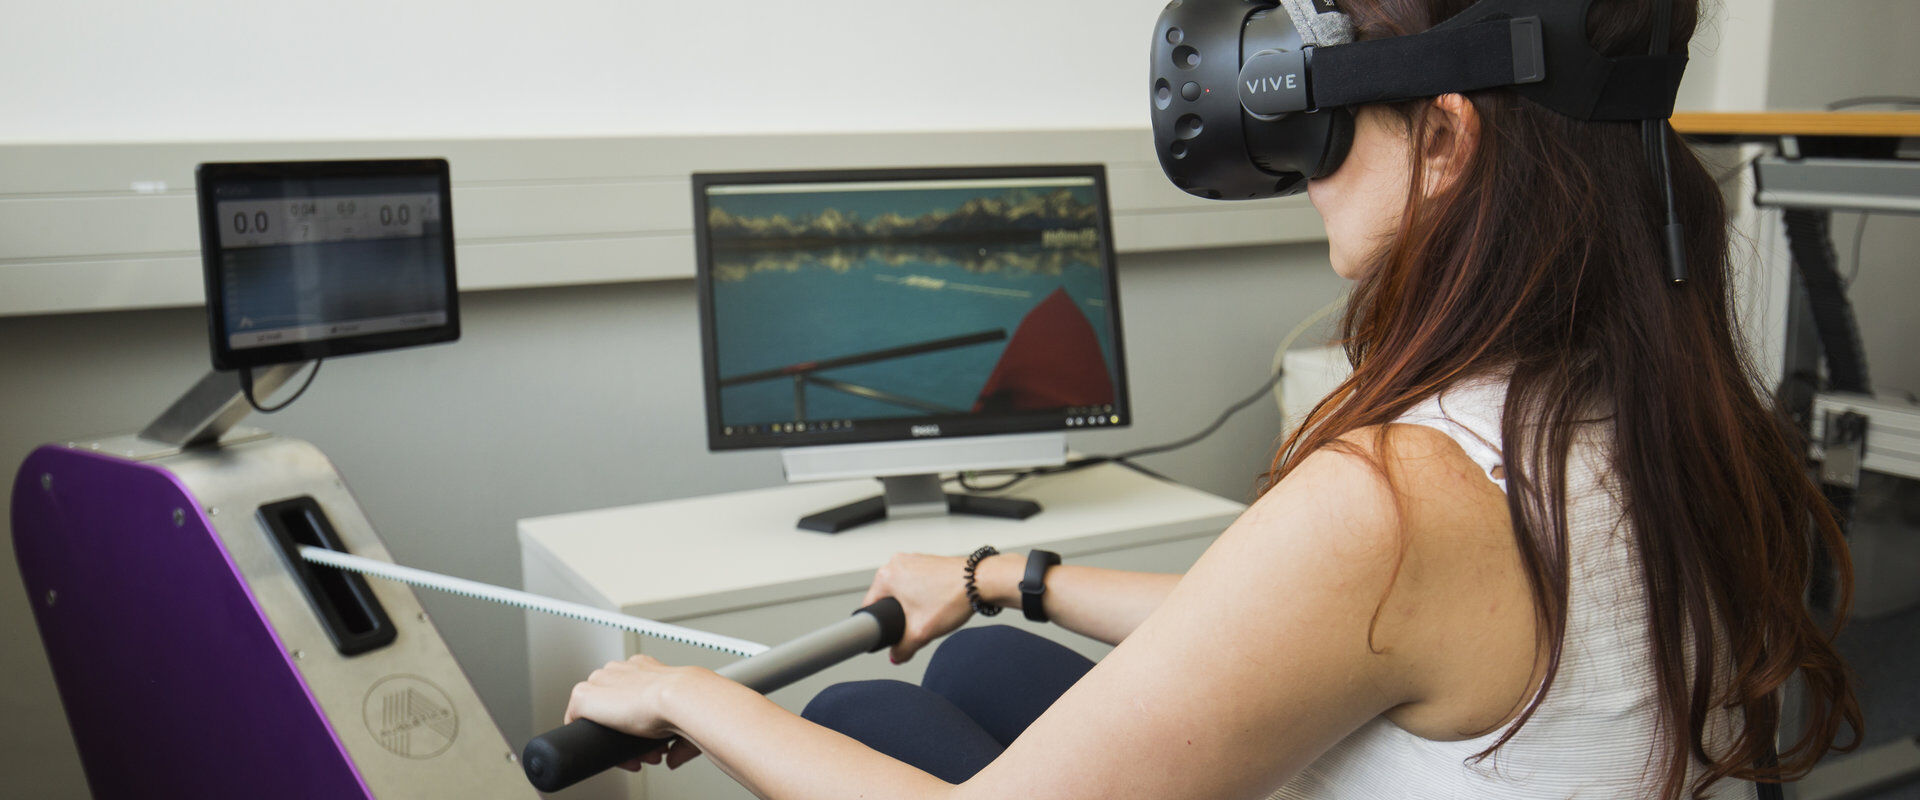 Studierende des Studiengangs Medieninformatik mit einer VR-Brille auf einem Rudergerät